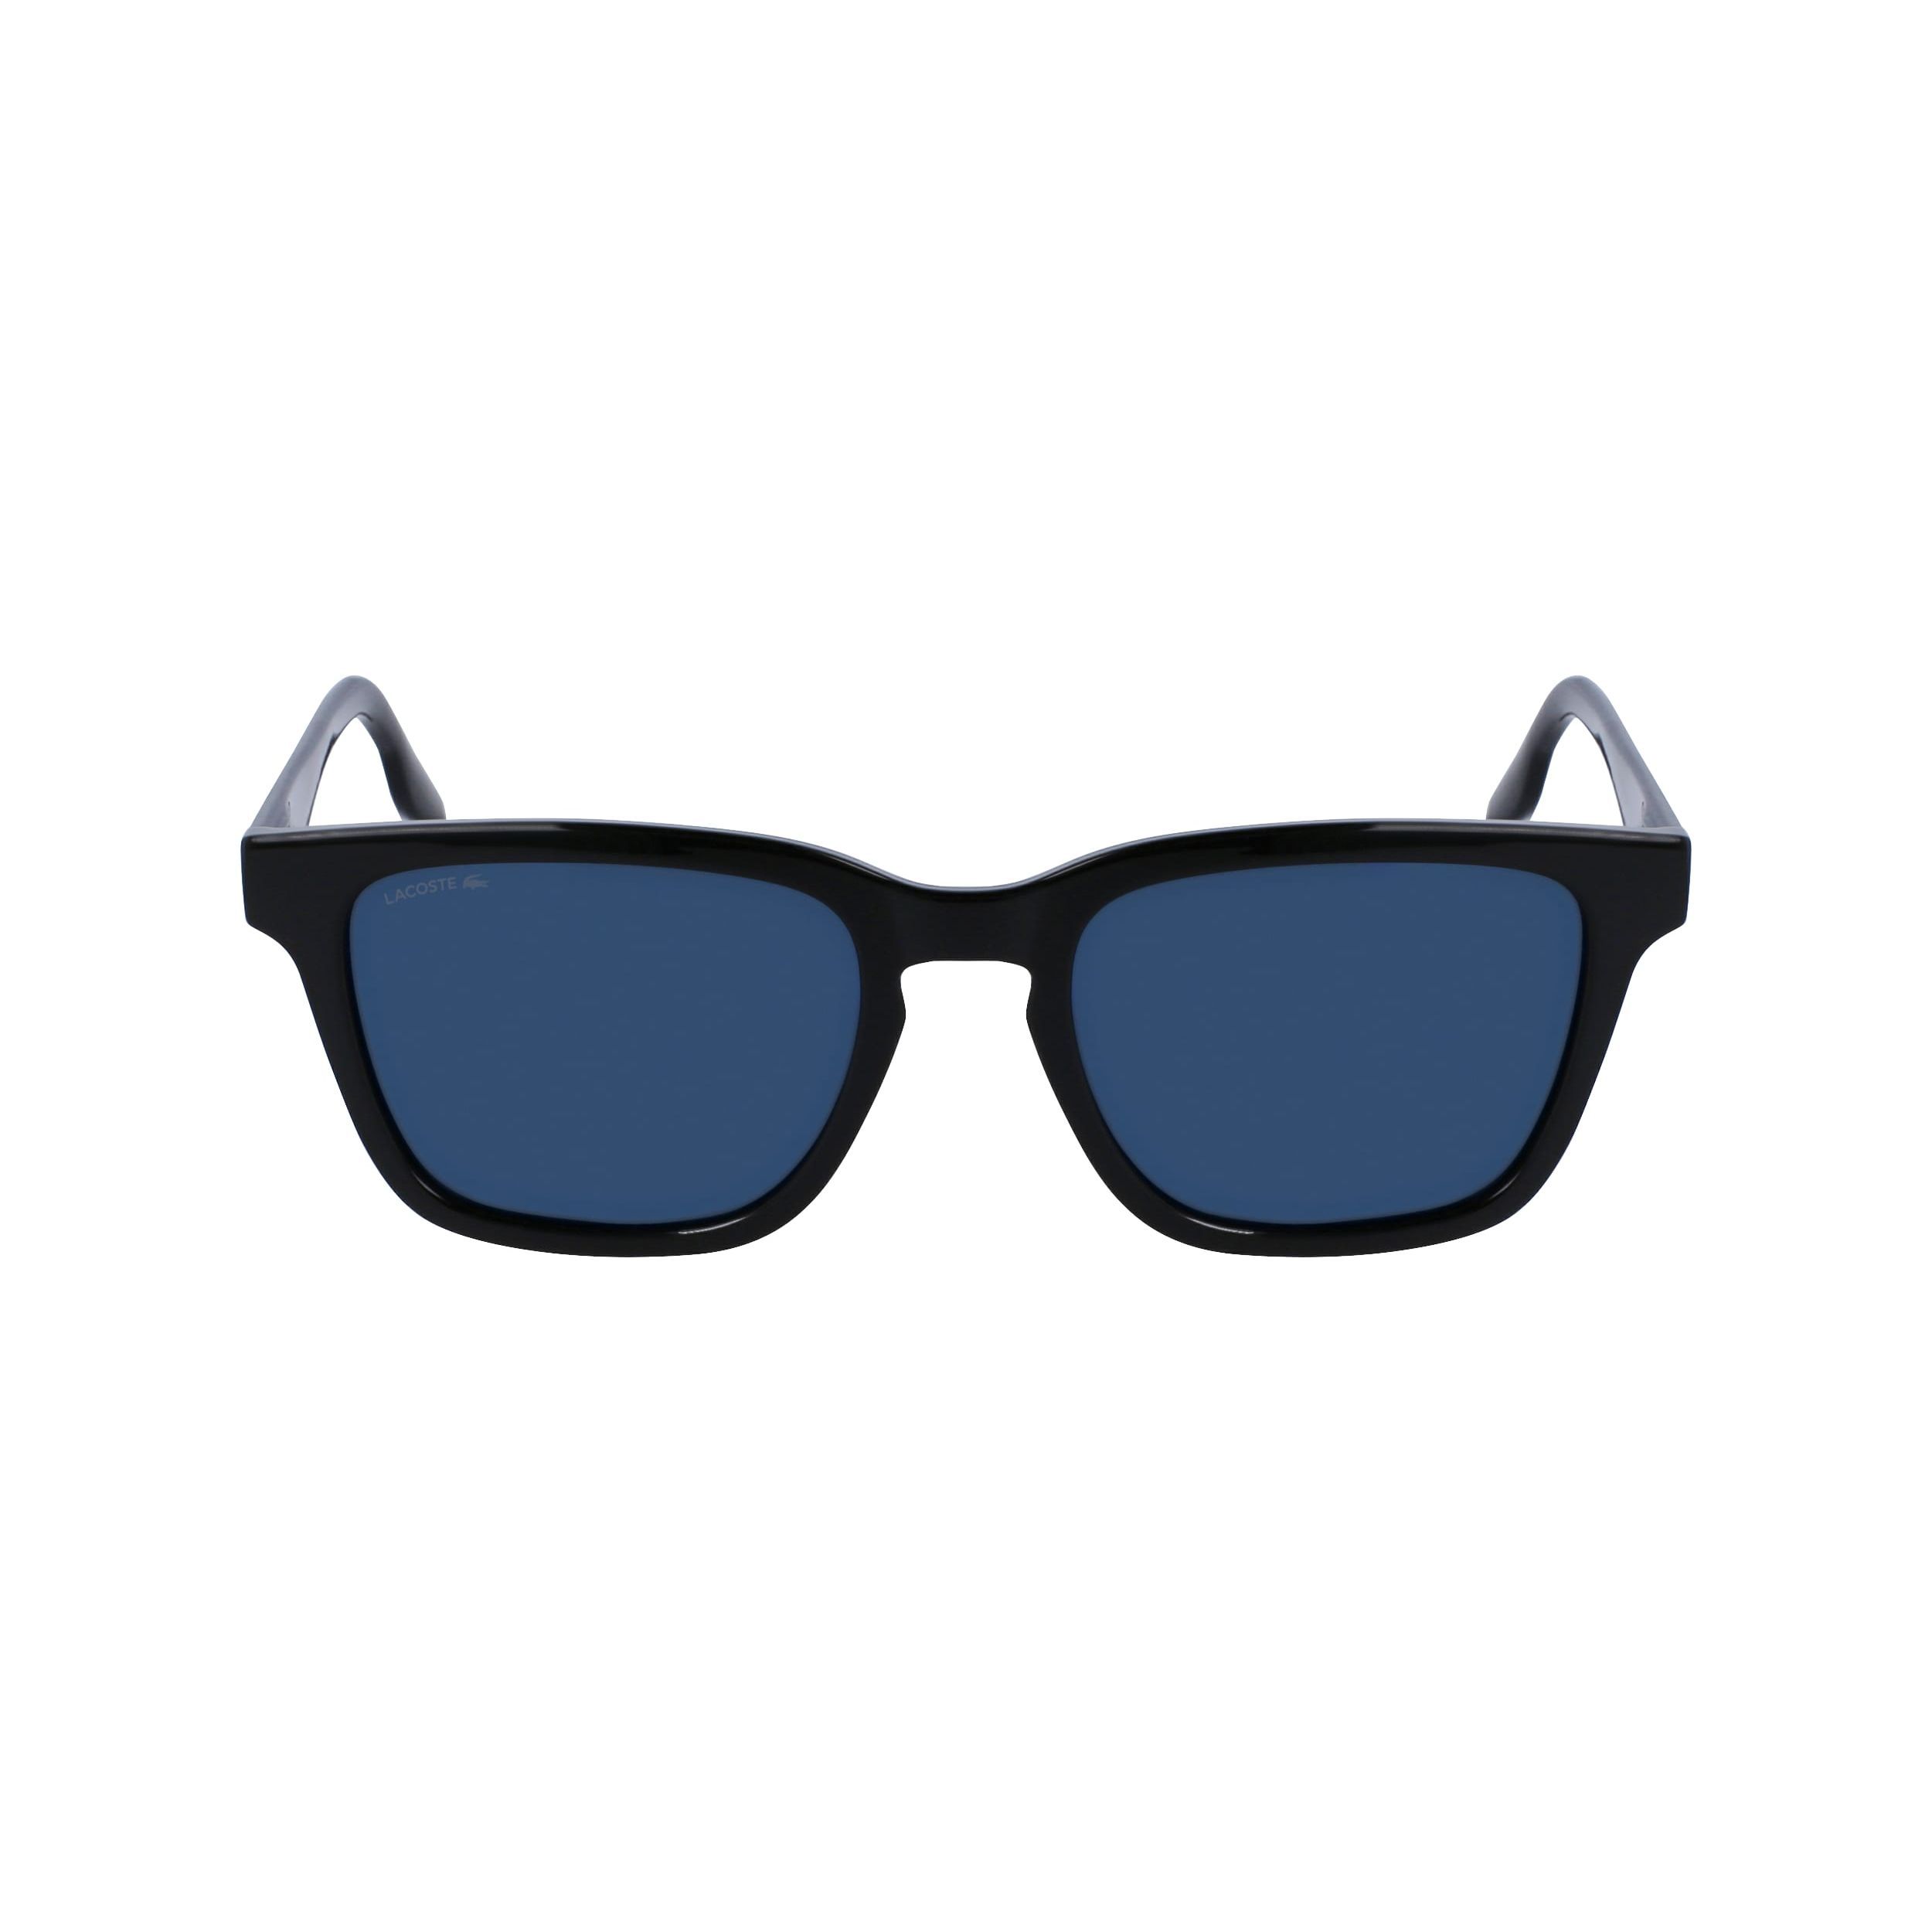 L987S Square Sunglasses 001 - size 53